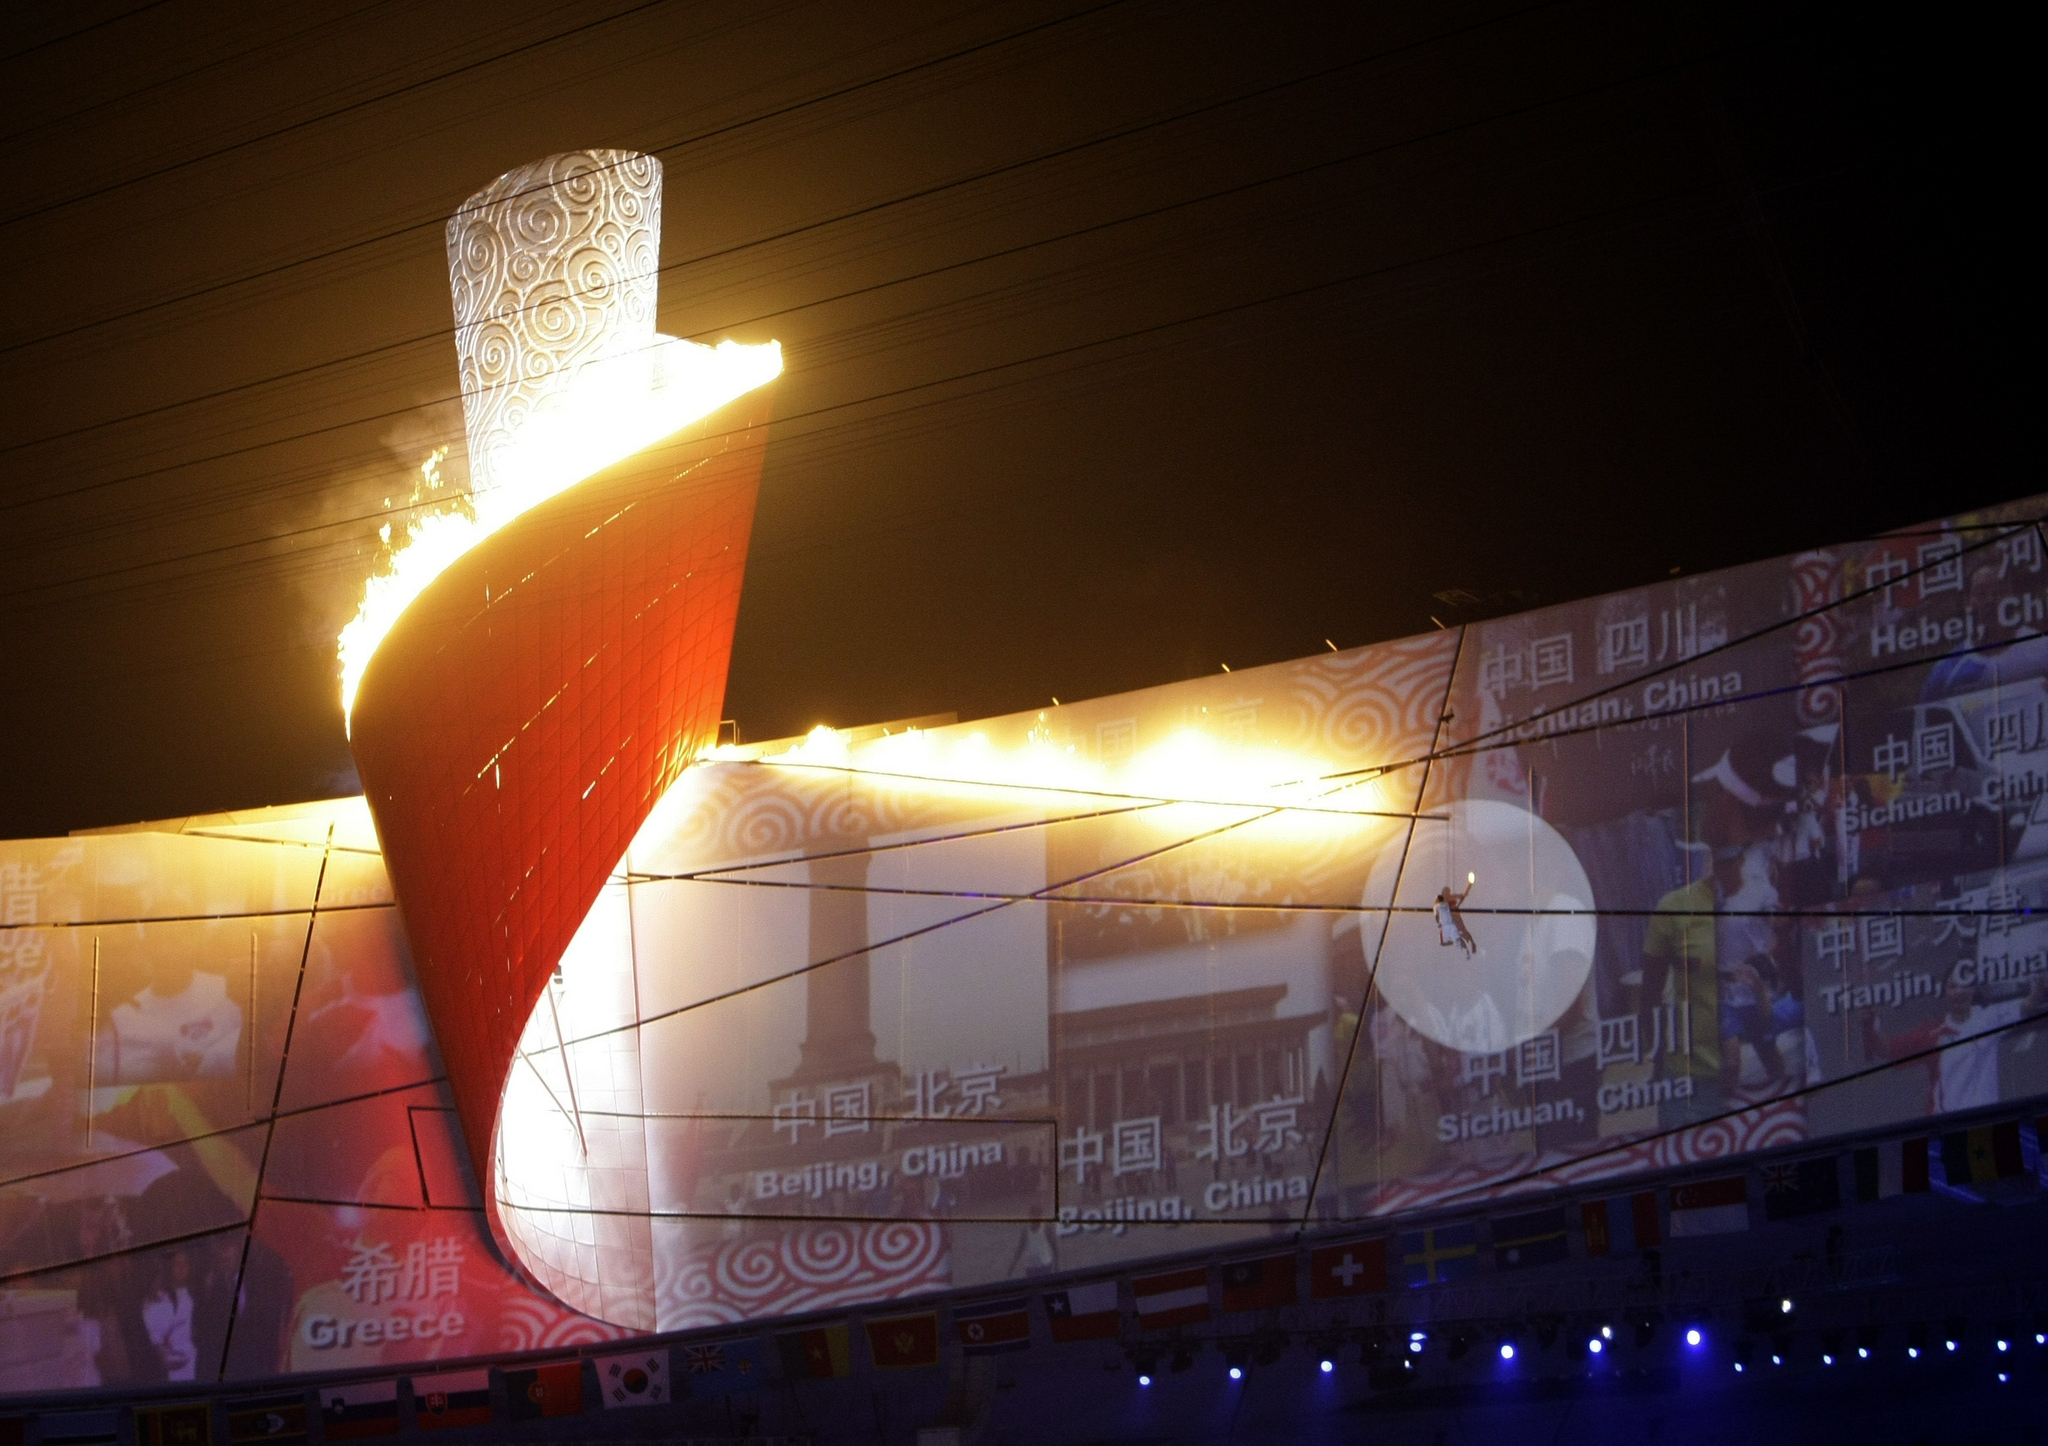 奥运火炬概念型外观设计 - 普象网